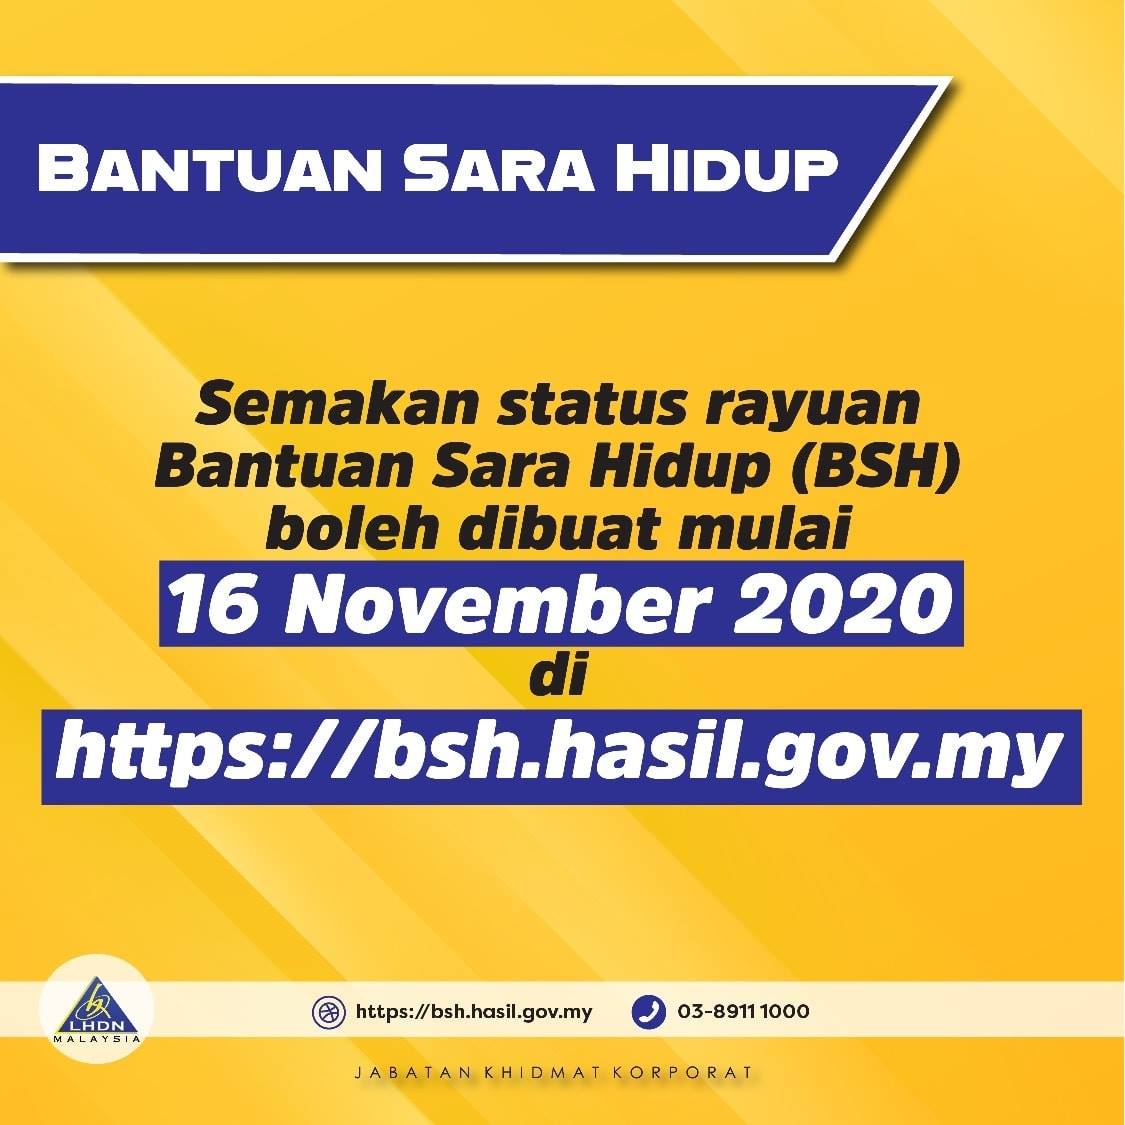 Tarikh Semakan Status Rayuan Bsh 2020 Portal Malaysia